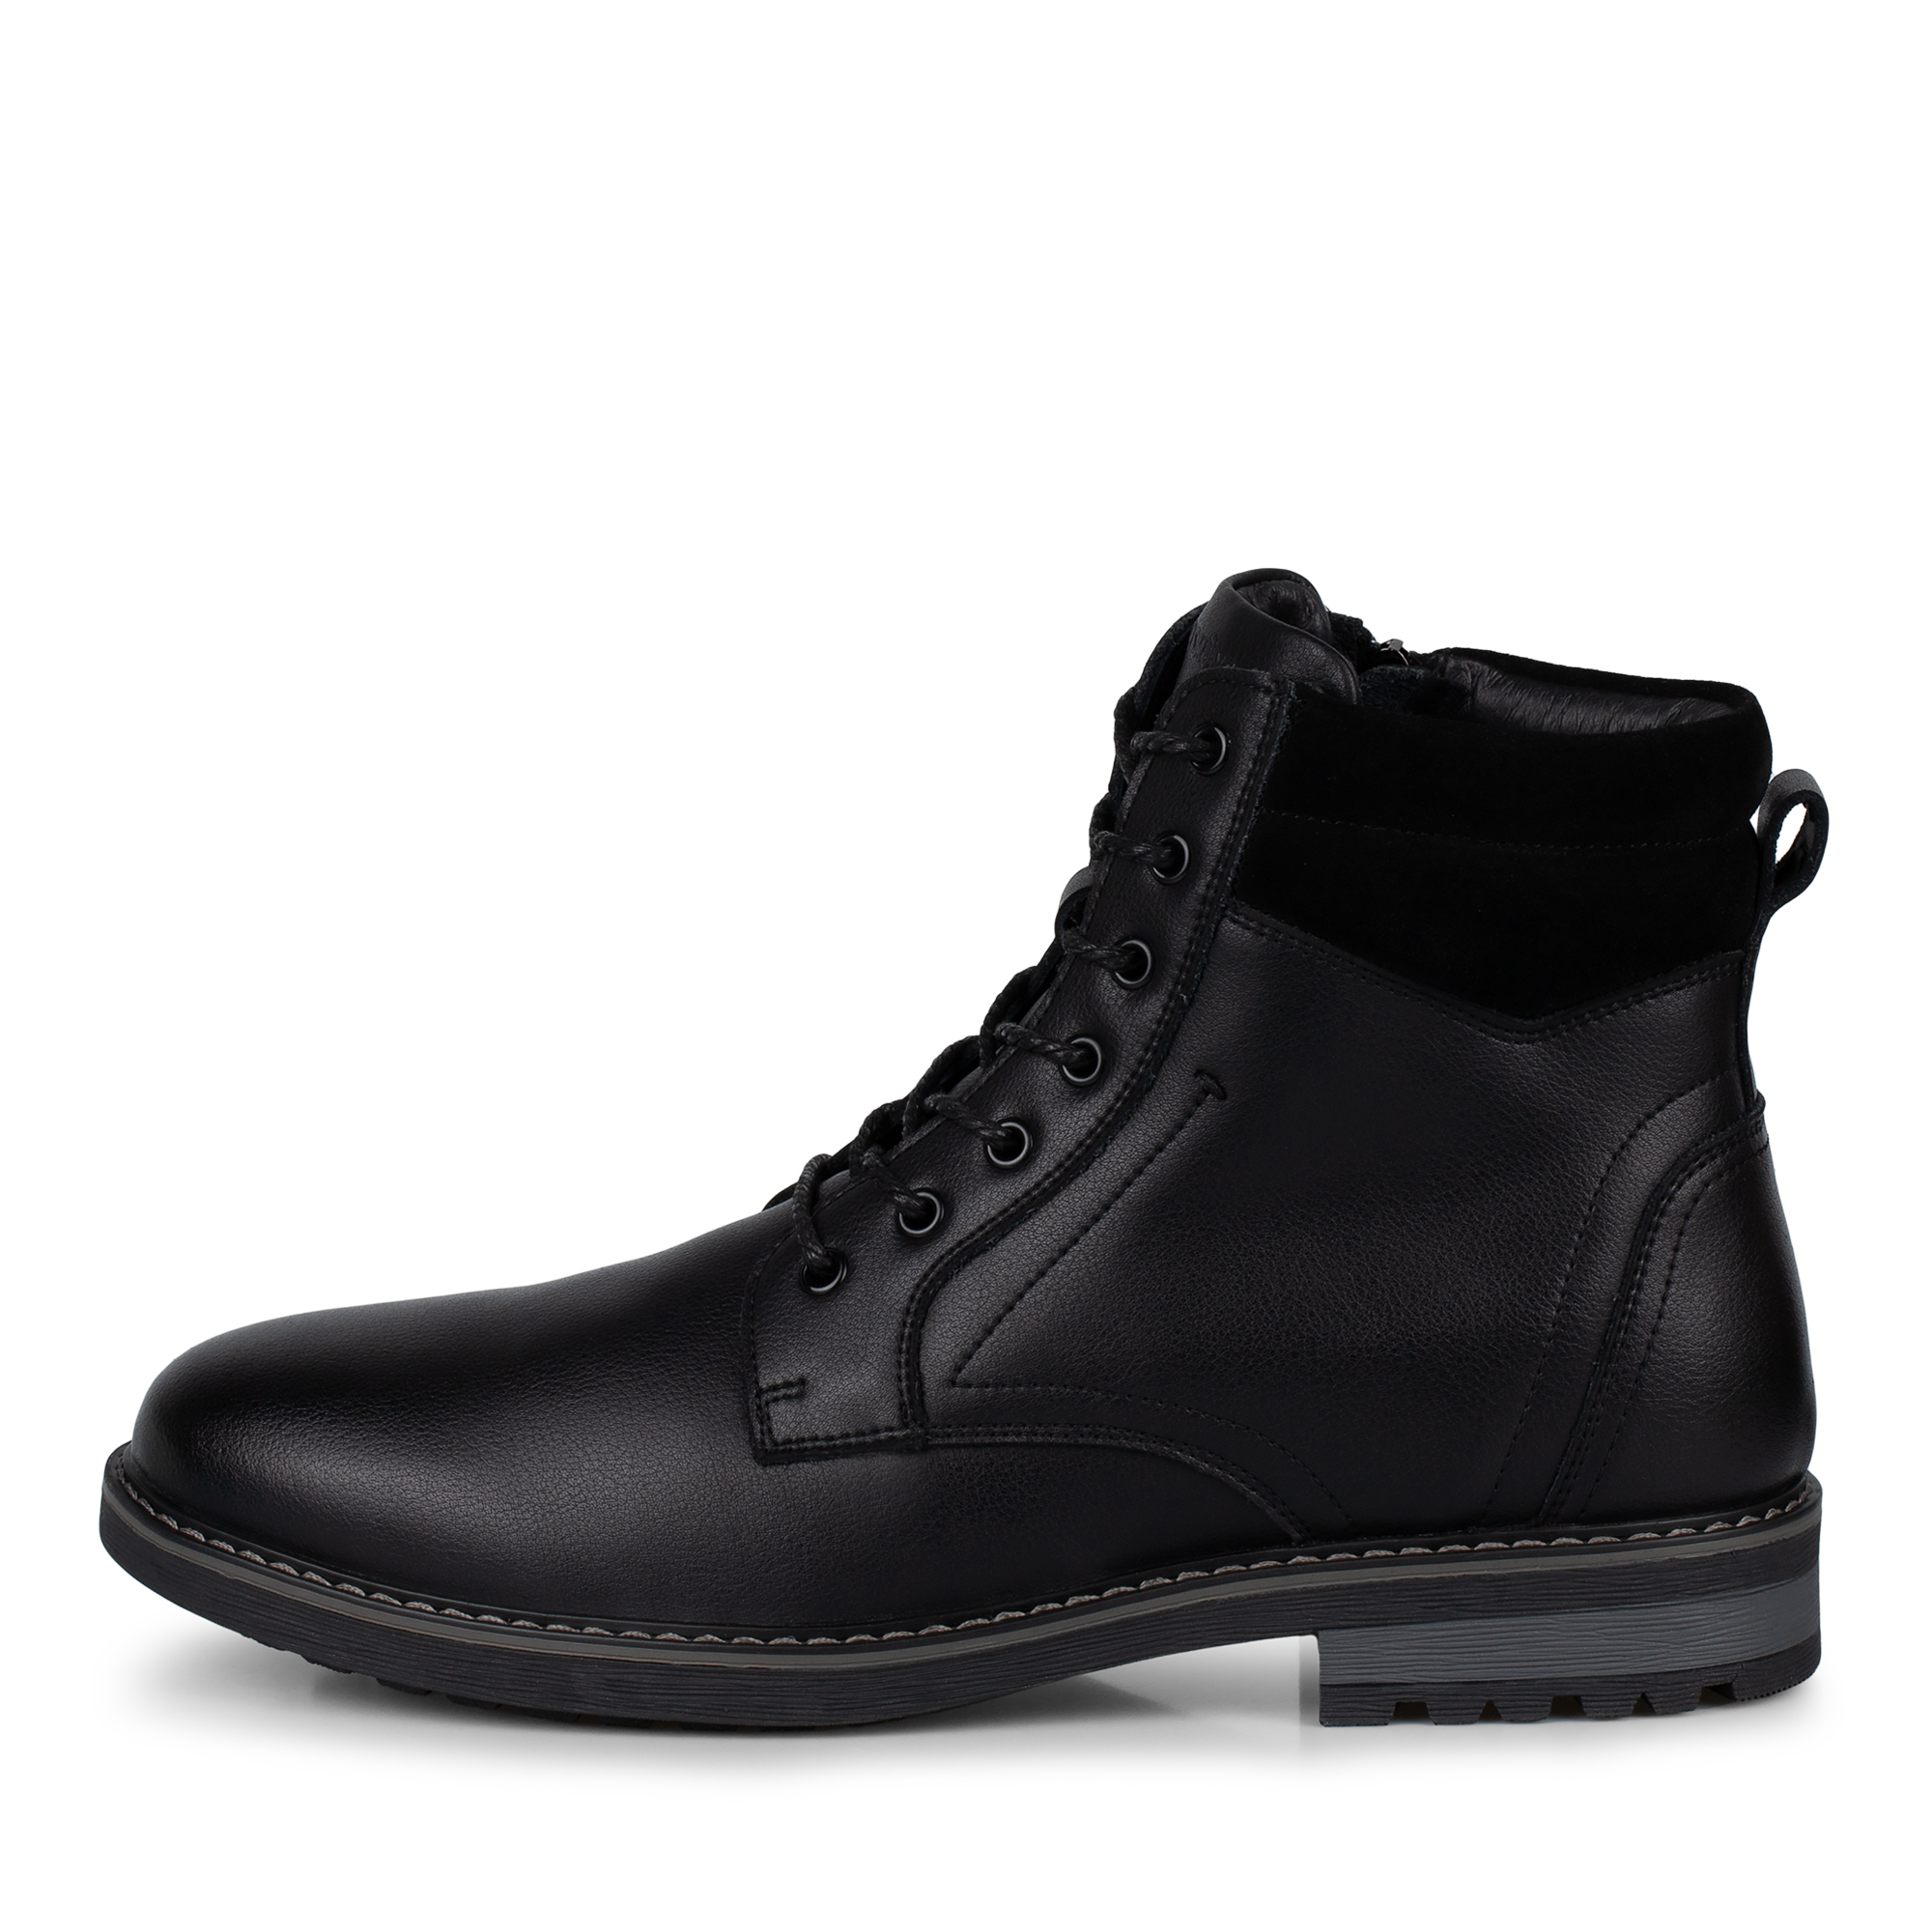 Ботинки Thomas Munz 058-3462A-5602, цвет черный, размер 42